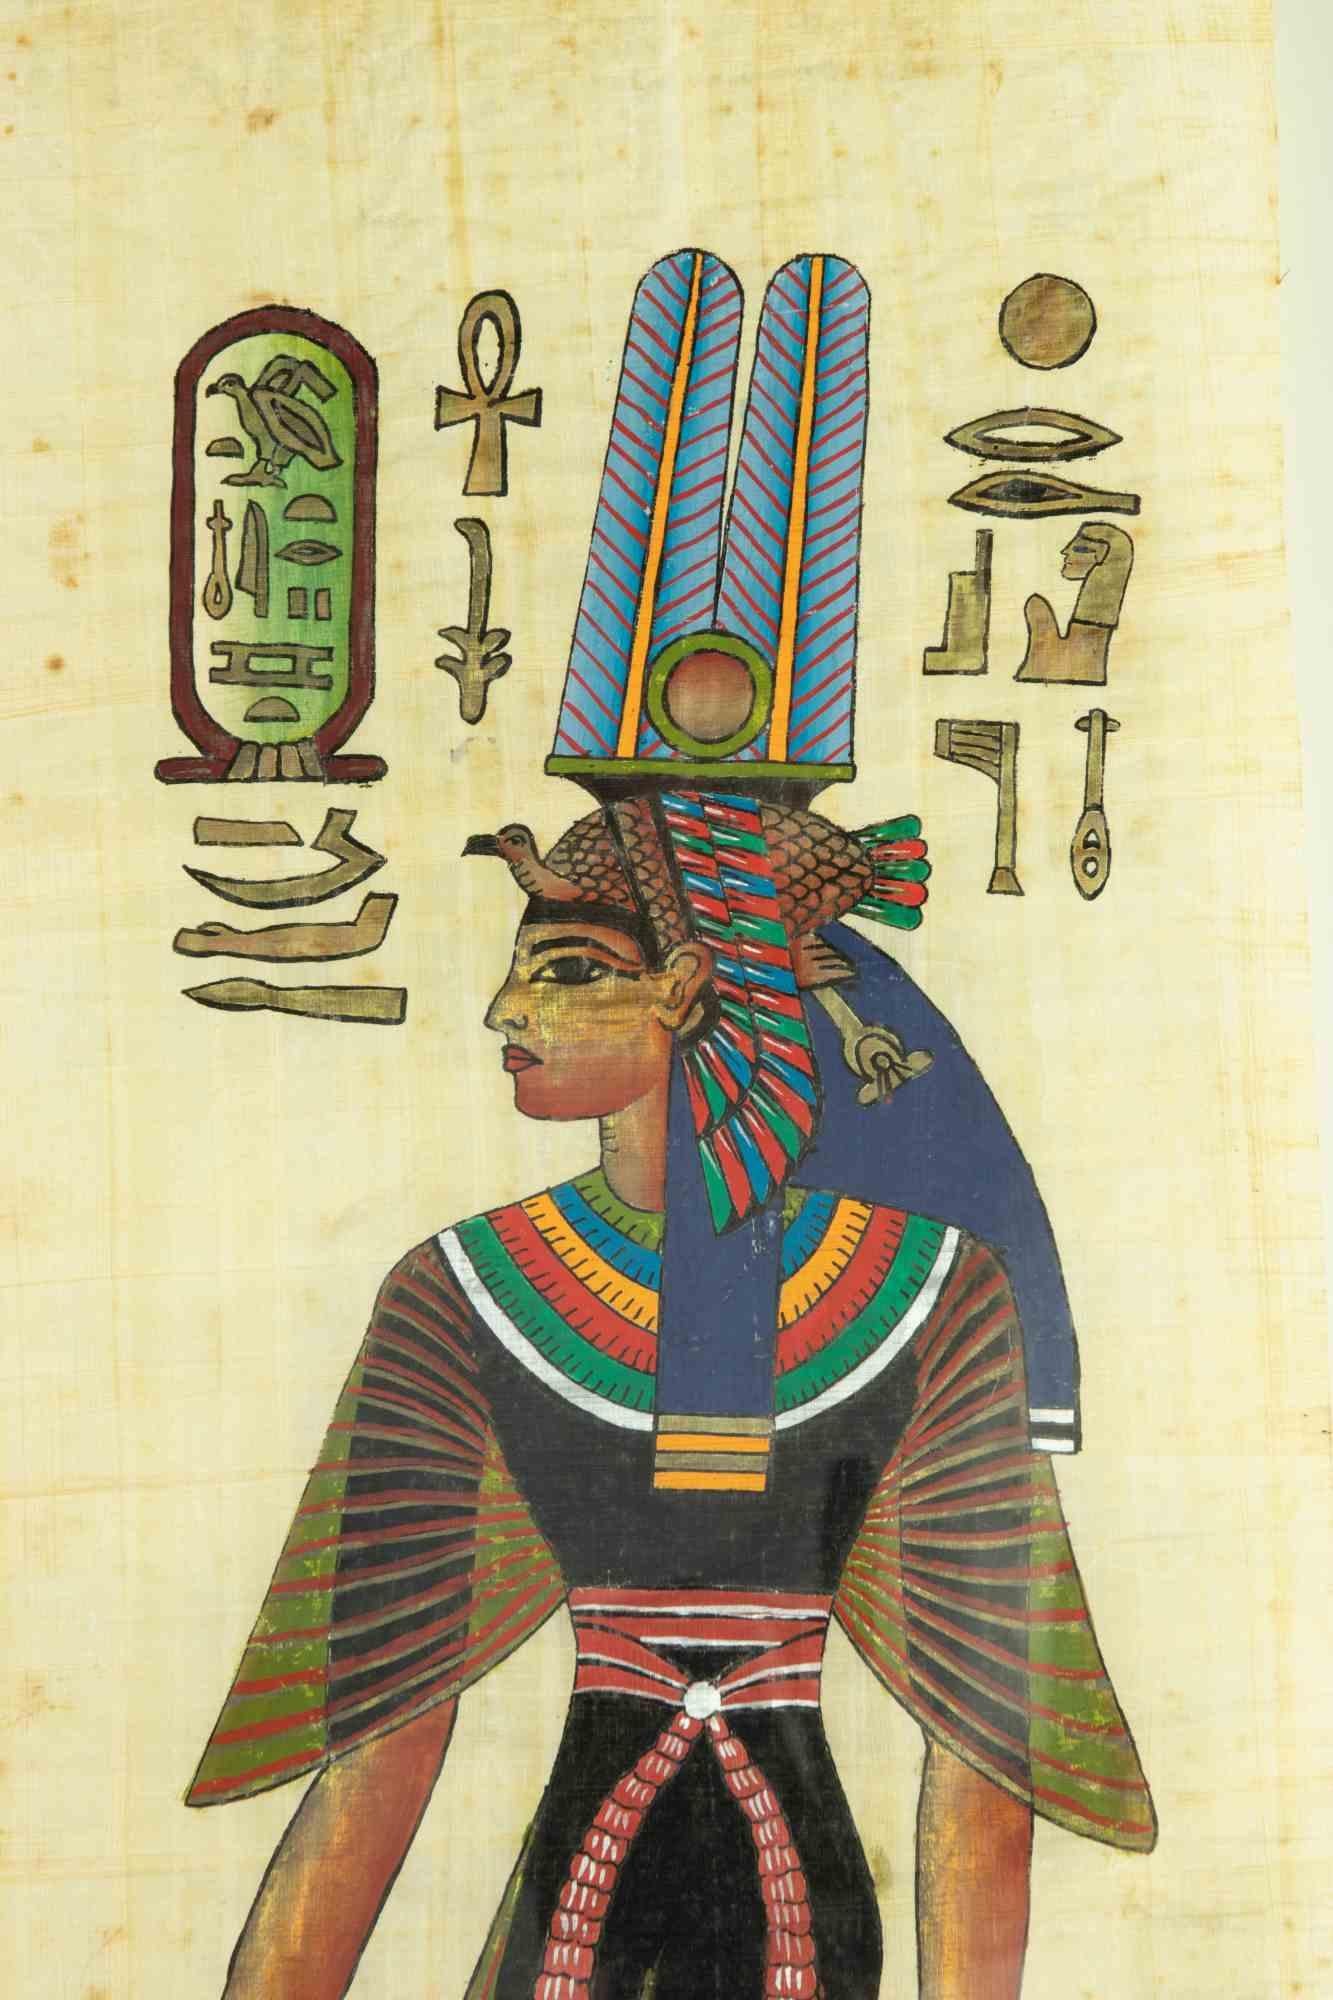 La reine égyptienne est une œuvre d'art réalisée par un inconnu au milieu du 20e siècle.

Tempera sur Papyrus.

77 x 51 cm ; 94 x 48 cm avec le cadre.

Bonnes conditions !